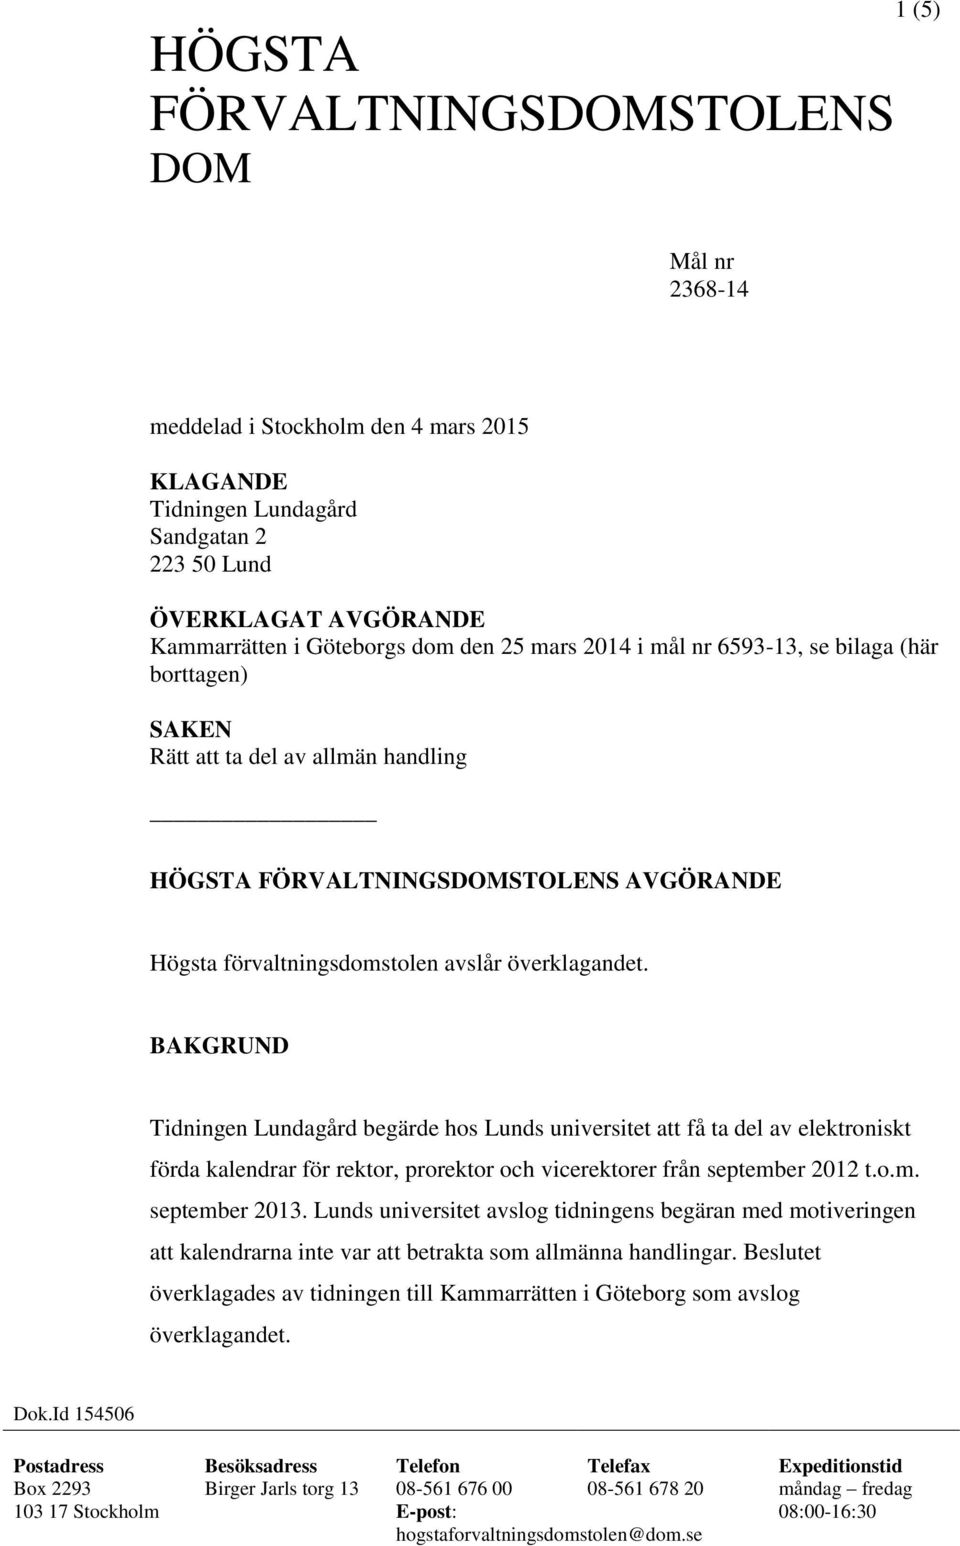 BAKGRUND Tidningen Lundagård begärde hos Lunds universitet att få ta del av elektroniskt förda kalendrar för rektor, prorektor och vicerektorer från september 2012 t.o.m. september 2013.